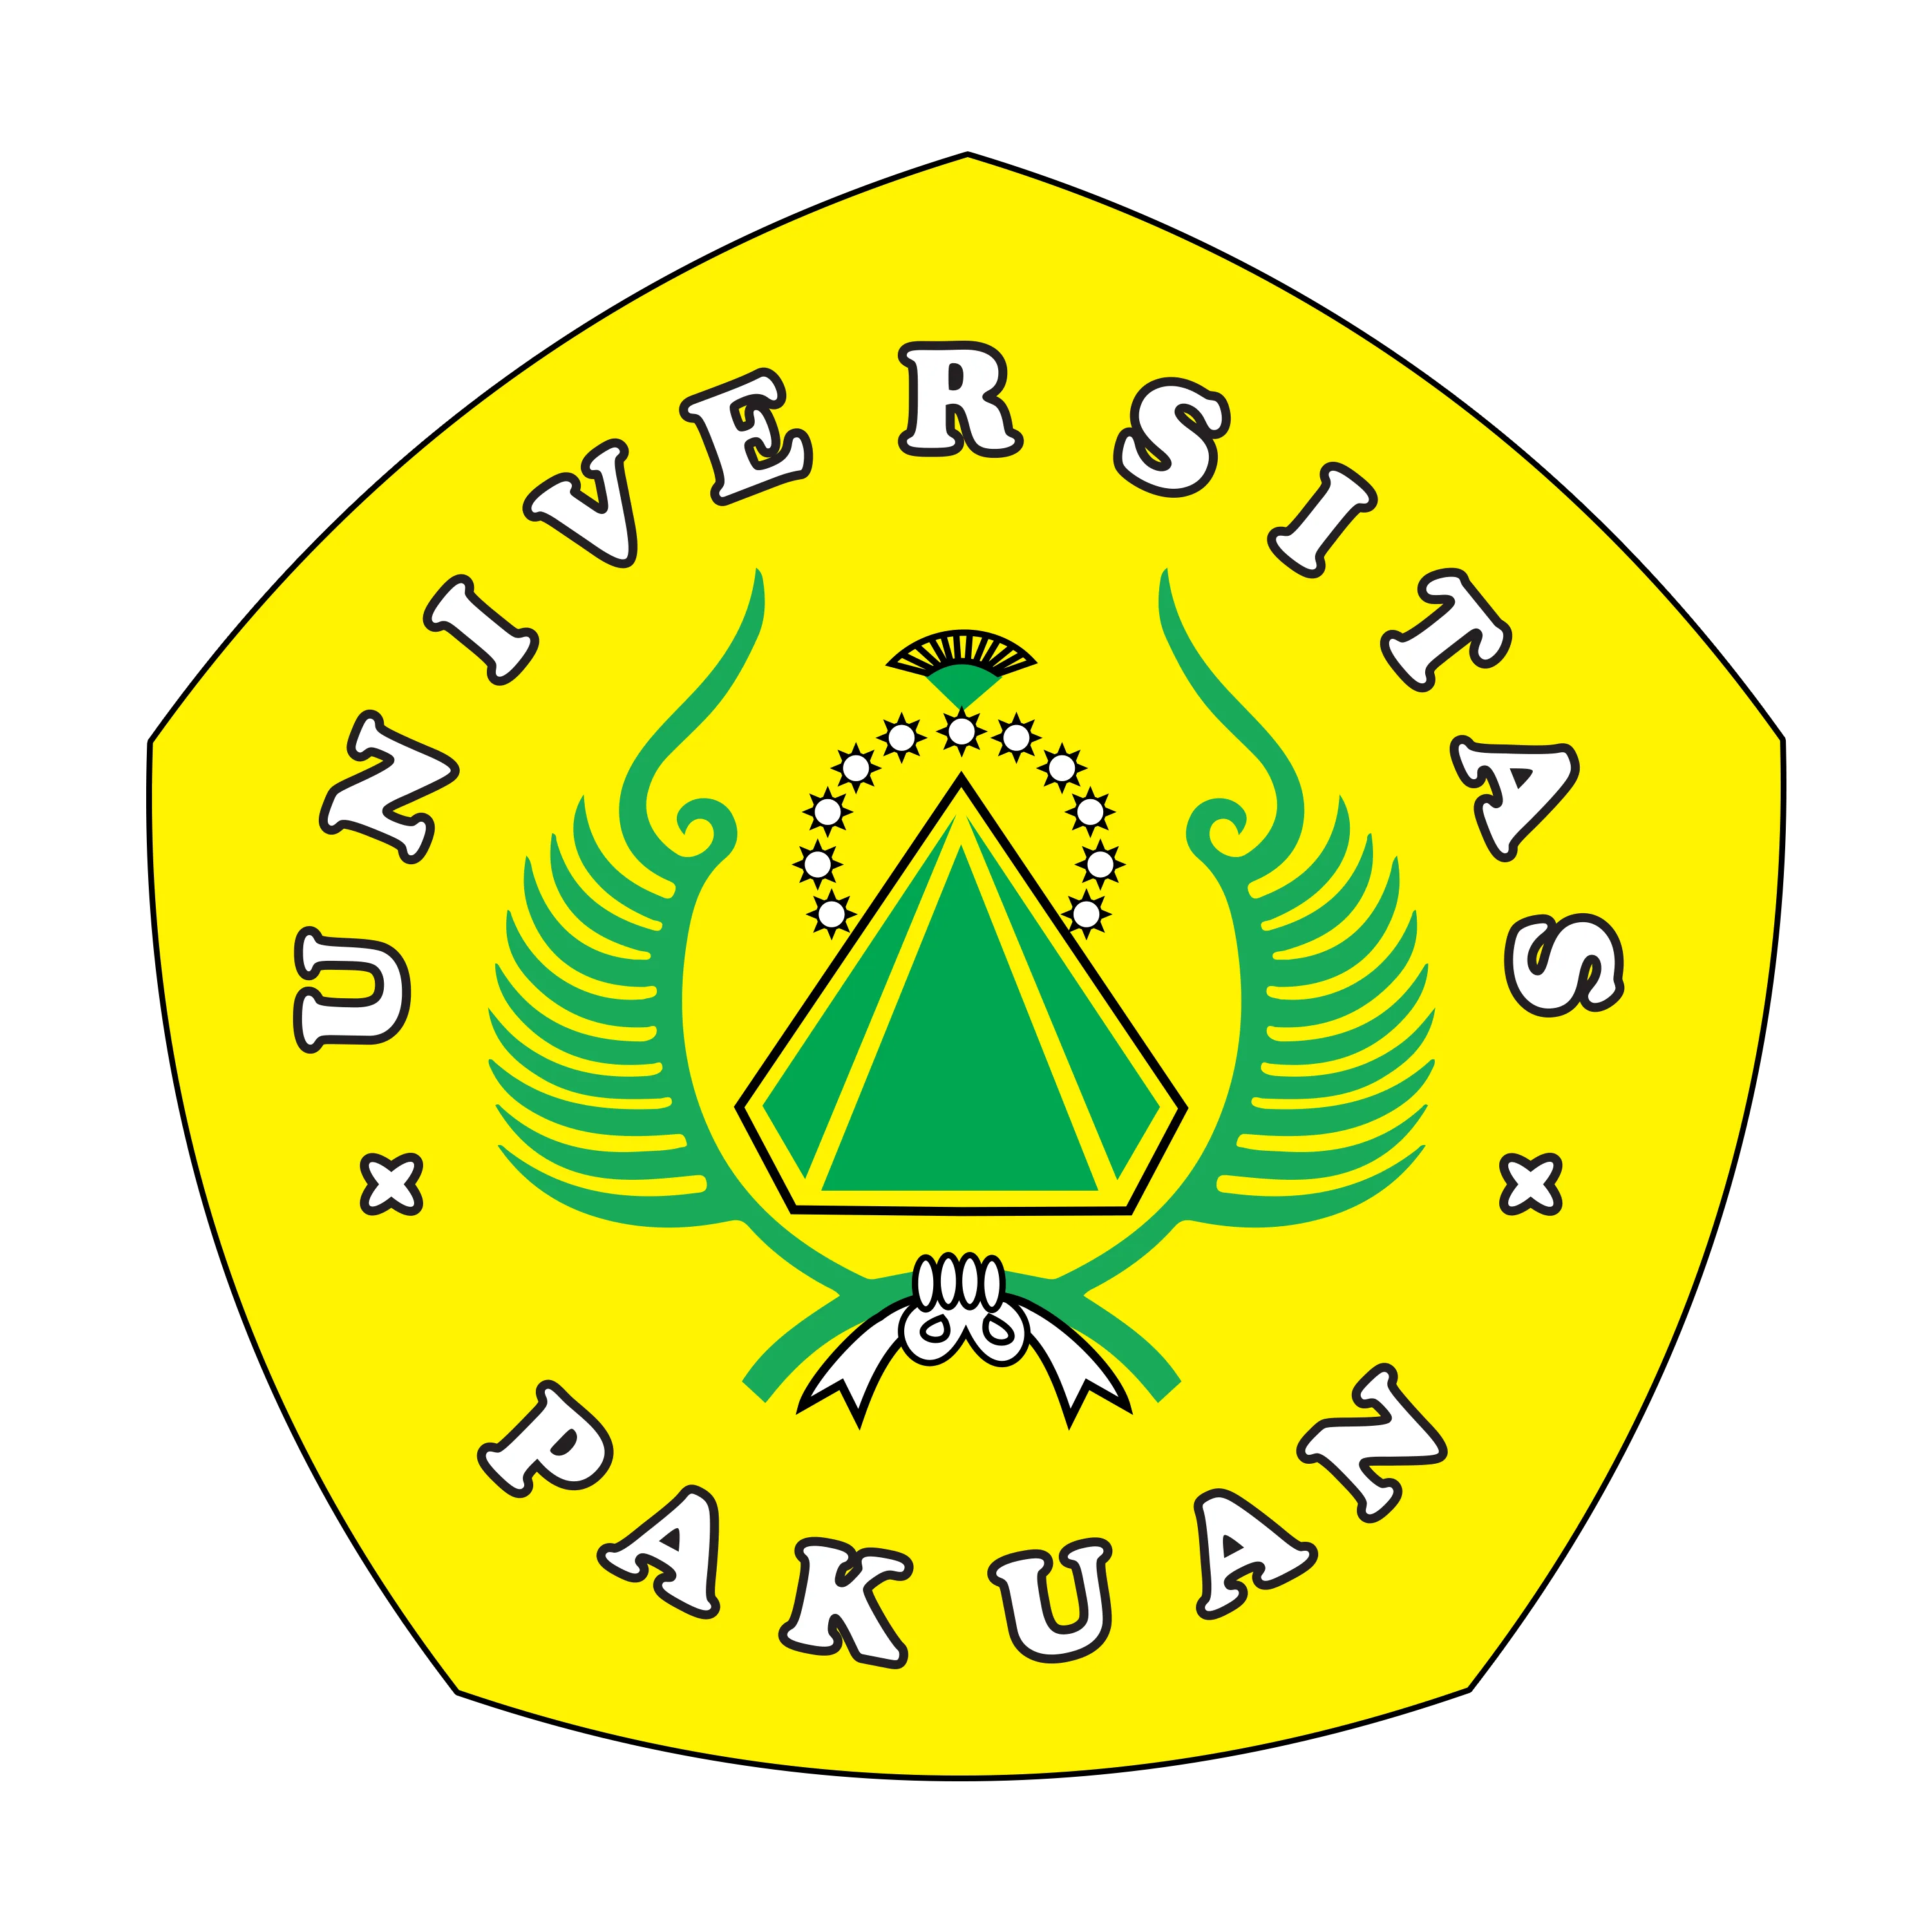 Universitas Pakuan Bogor